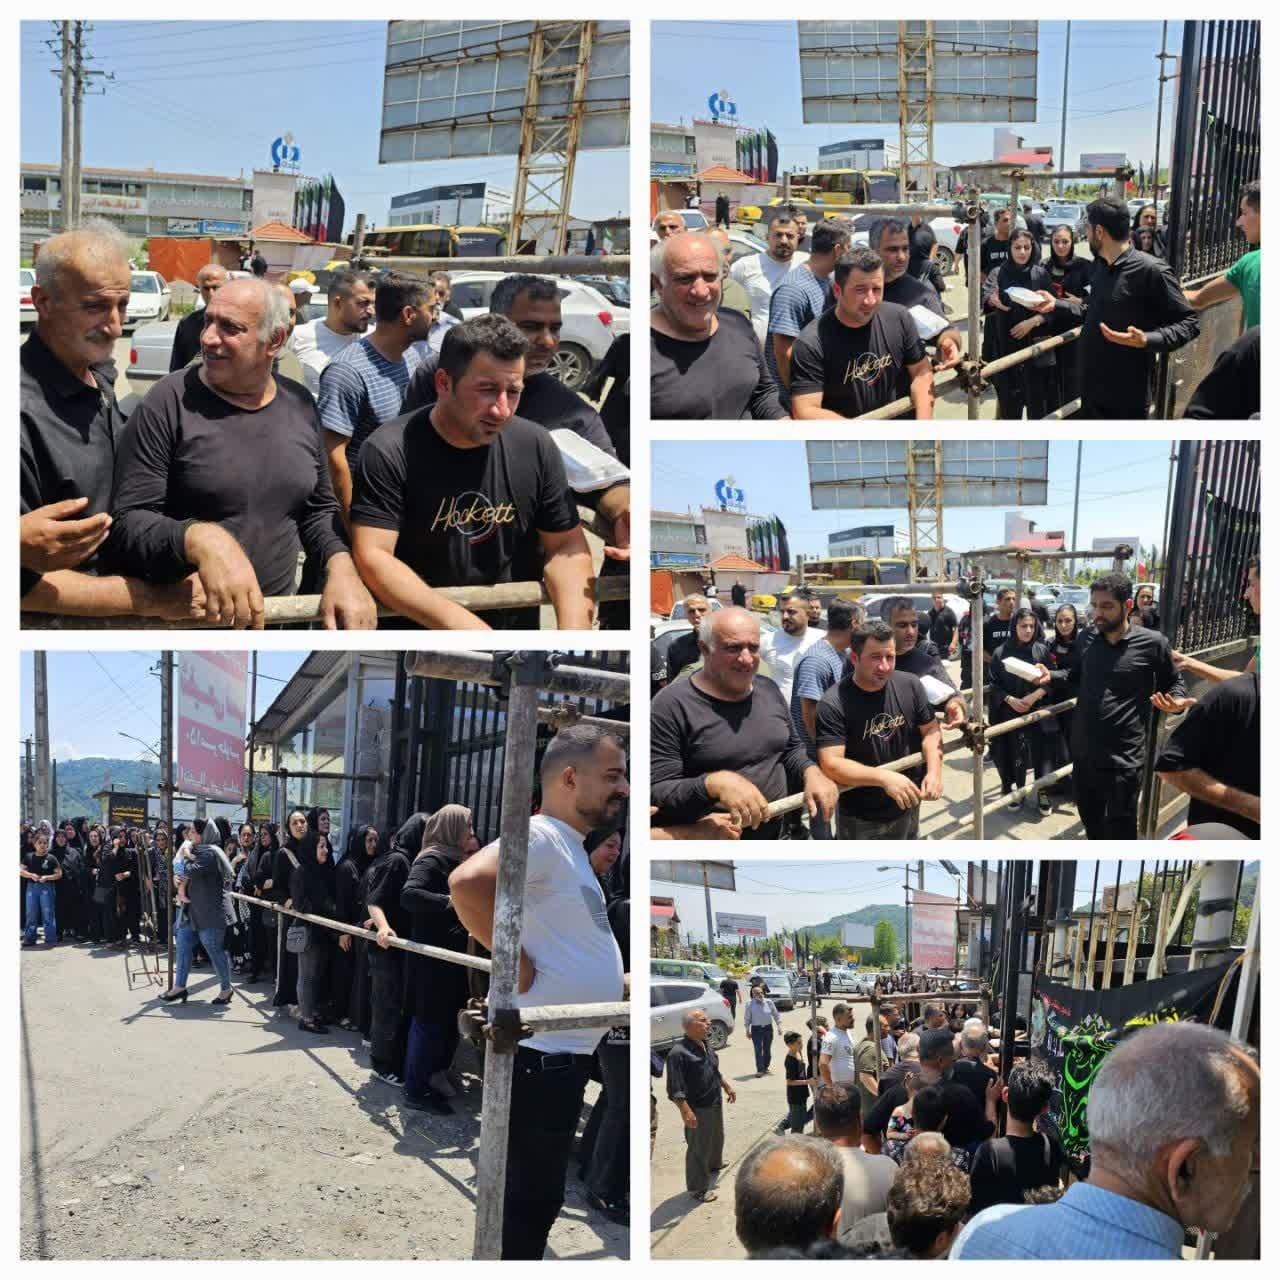 گزارش تصویری از مراسم اطعام دهی روزعاشورا حسینی توسط ترمینال مسافربری منوچهرمهدی پور واقع در میدان شهید املاکی لنگرود